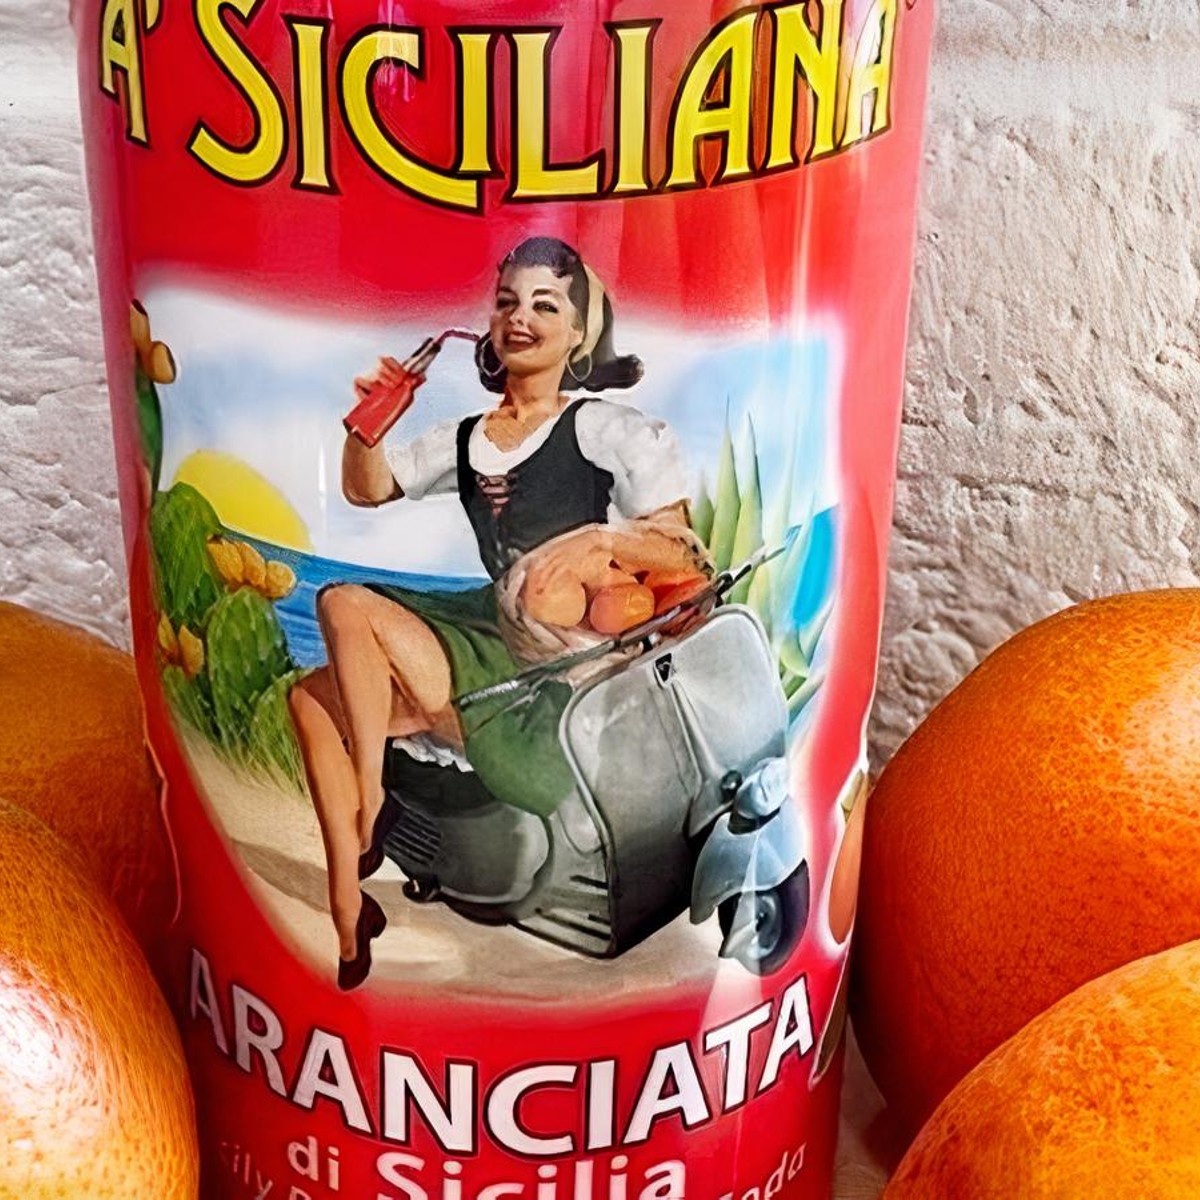 A' Siciliana - Aranciata di Sicilia (Sicily Blood Orange Soda